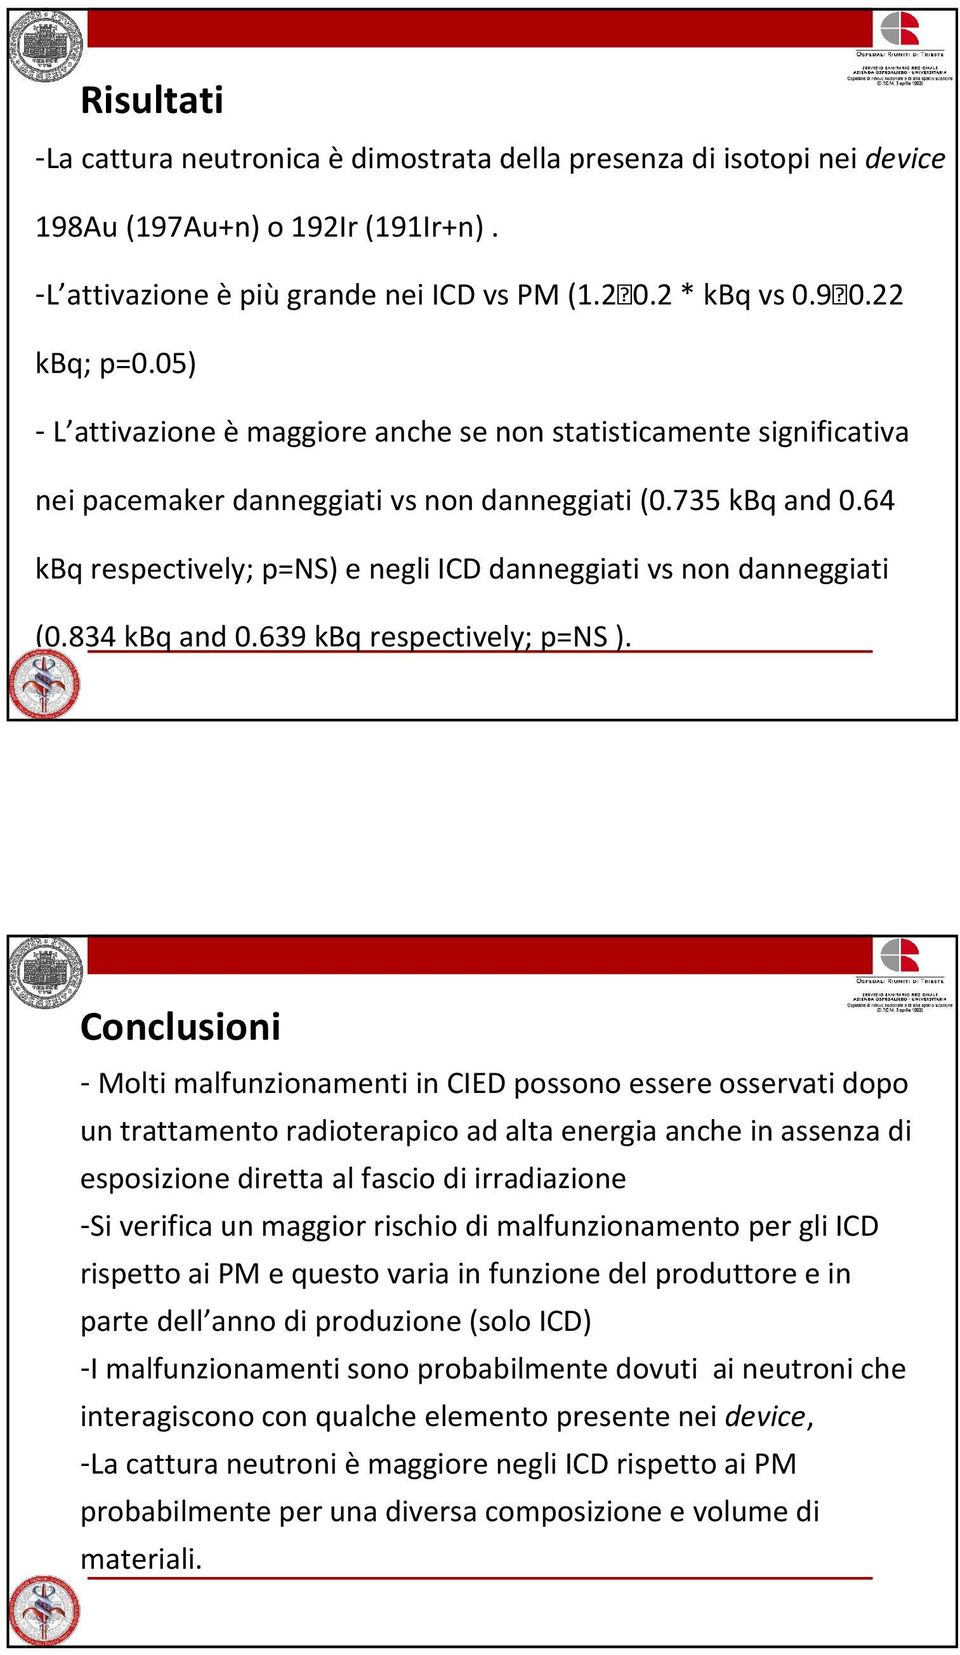 64 kbq respectively; p=ns) e negli ICD danneggiati vs non danneggiati (0.834 kbq and 0.639 kbq respectively; p=ns).